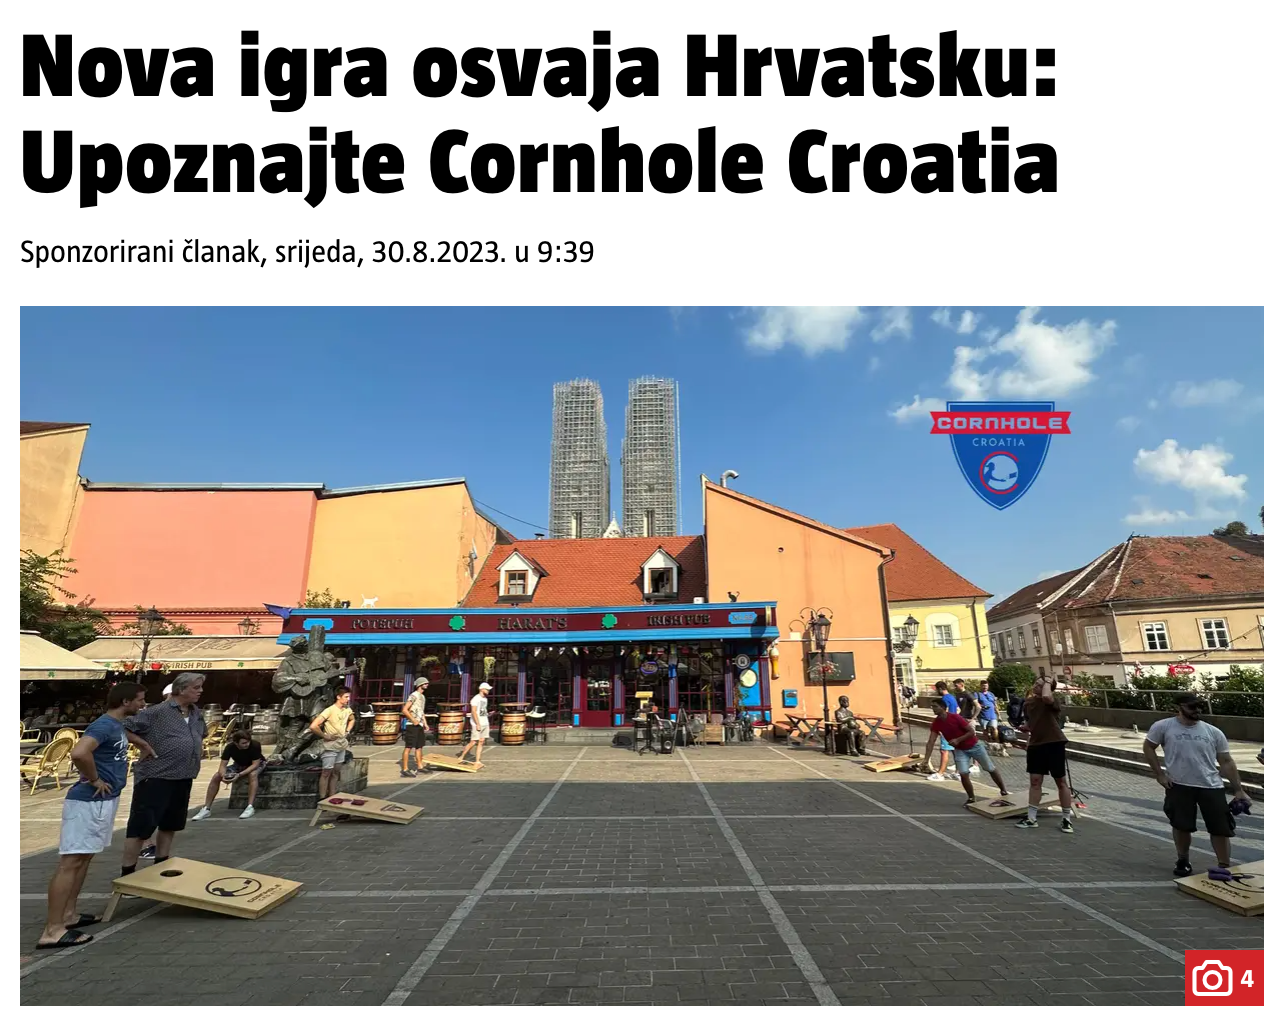 Upoznaj Cornhole Croatia